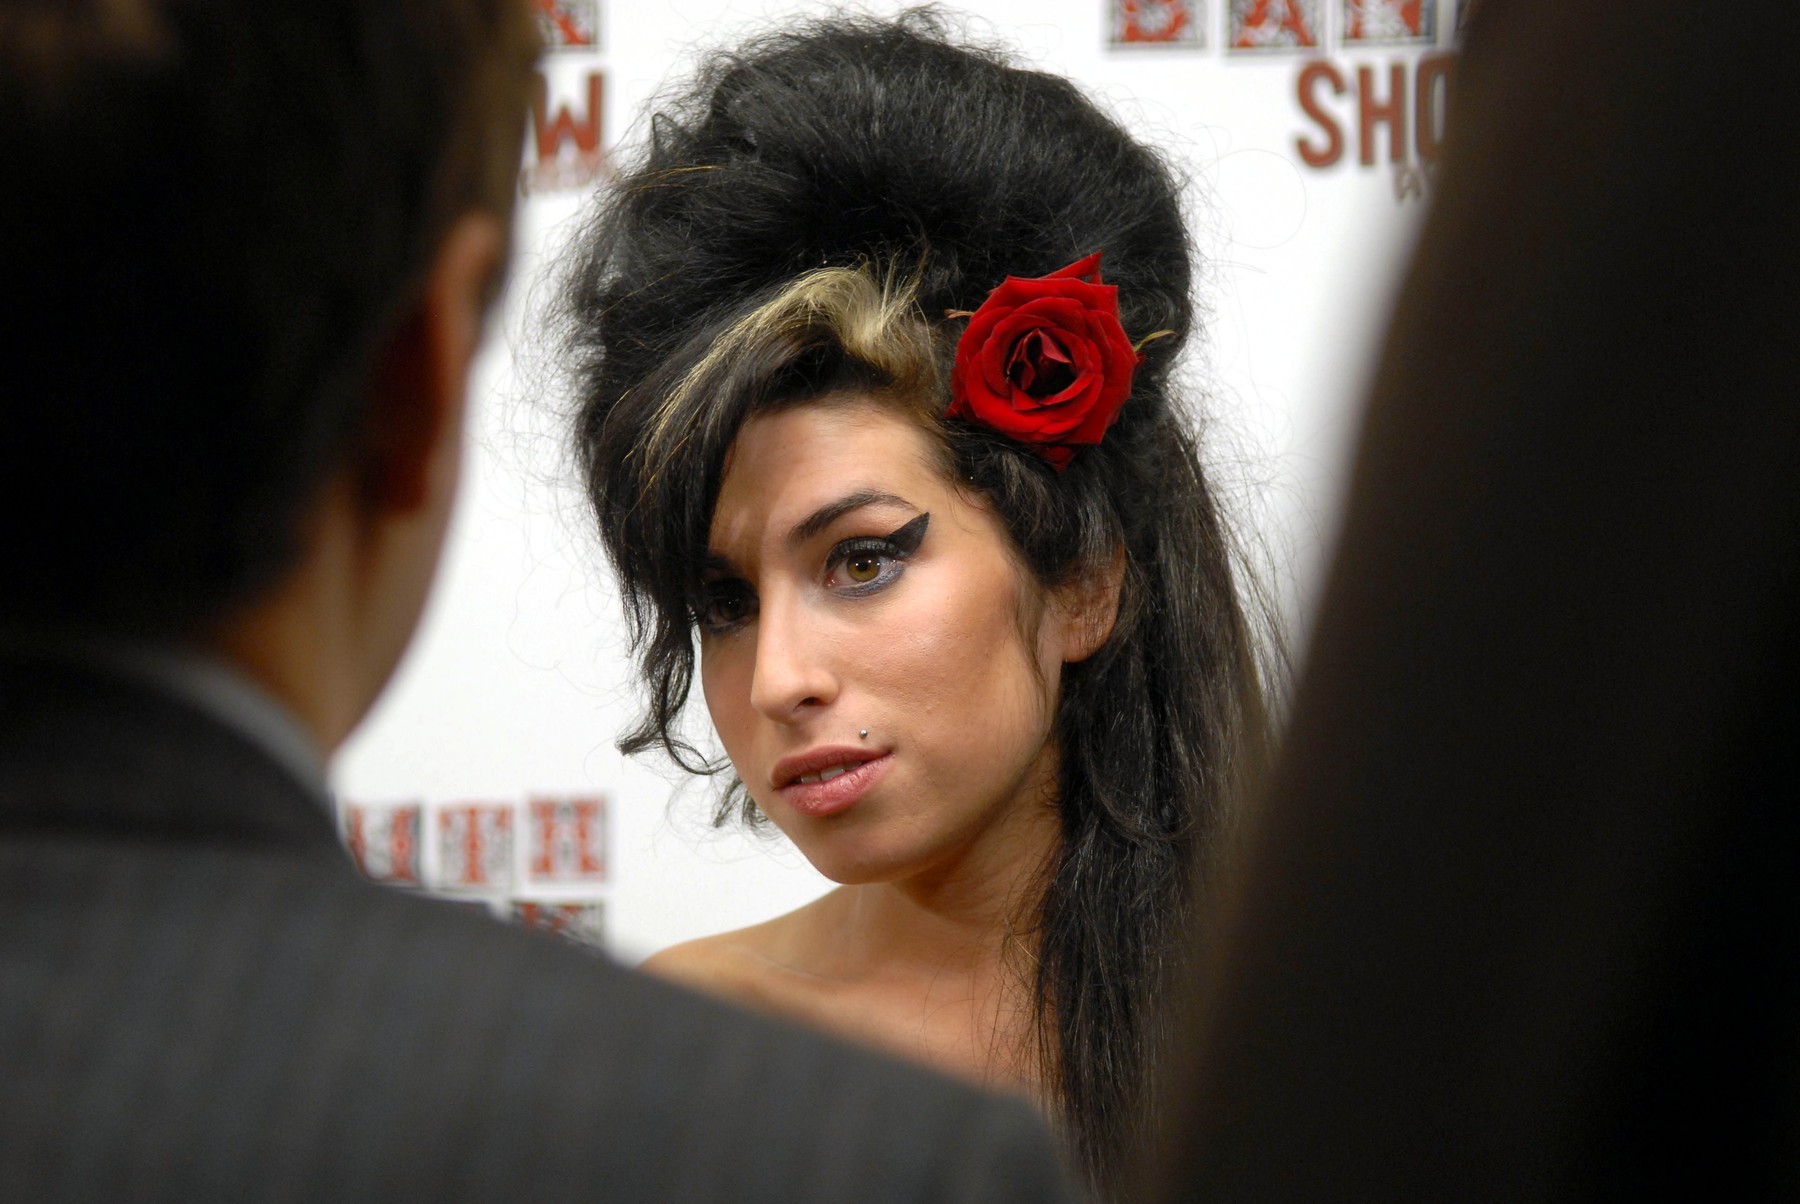 Illamasqua ima make up kolekciju posvećenu Amy Winehouse i dali su joj znakovito ime